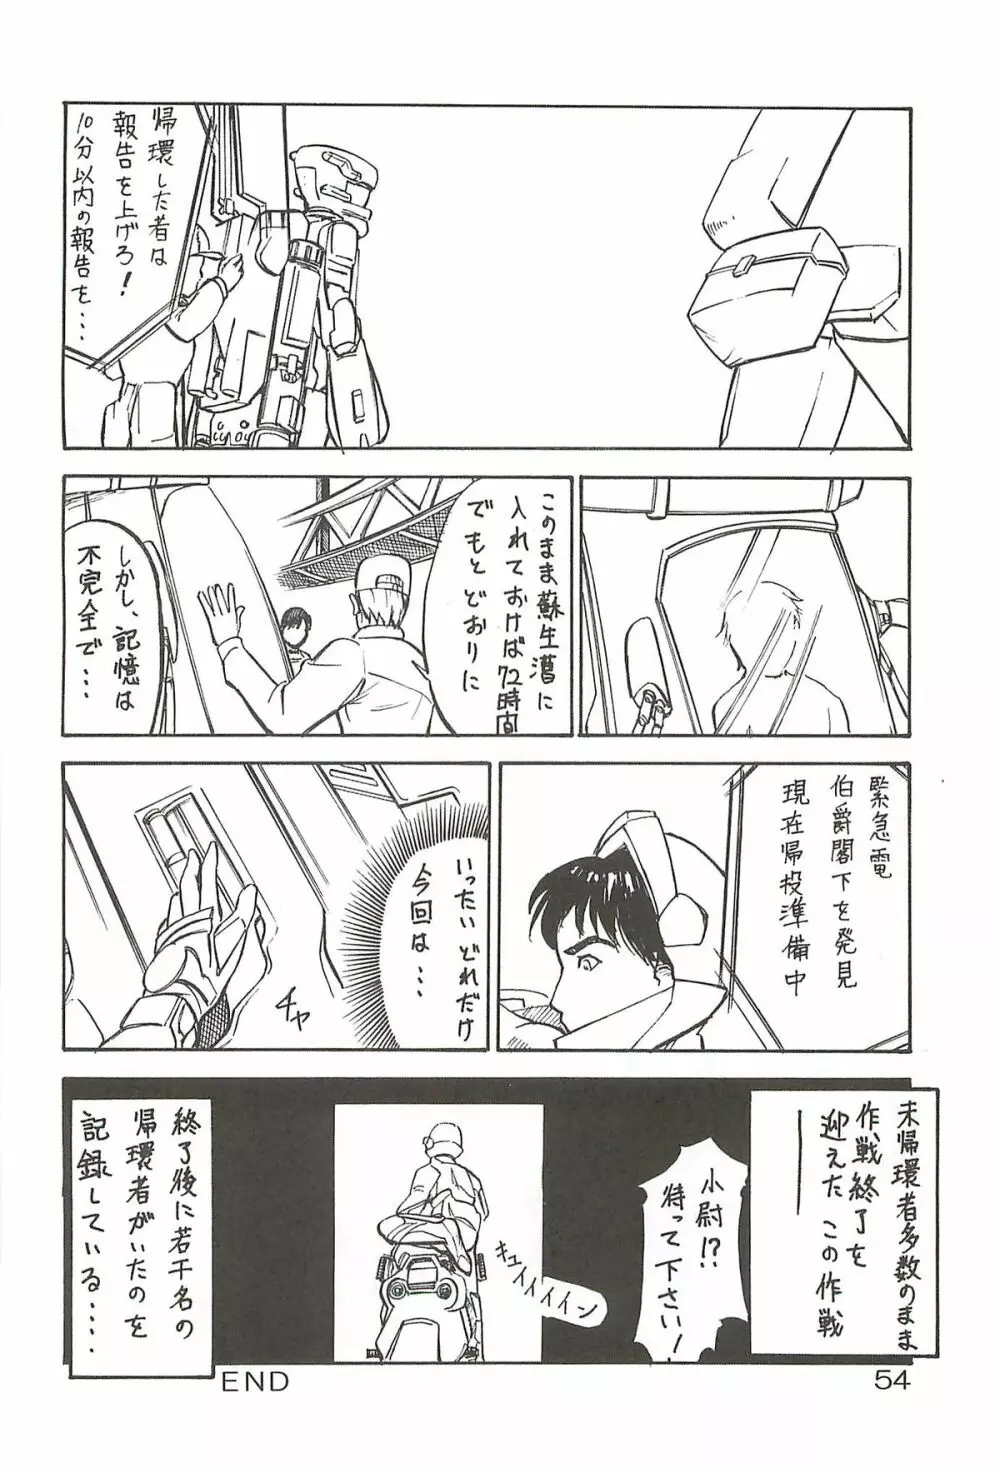 追放覚悟 Special edition Phase1 - page53